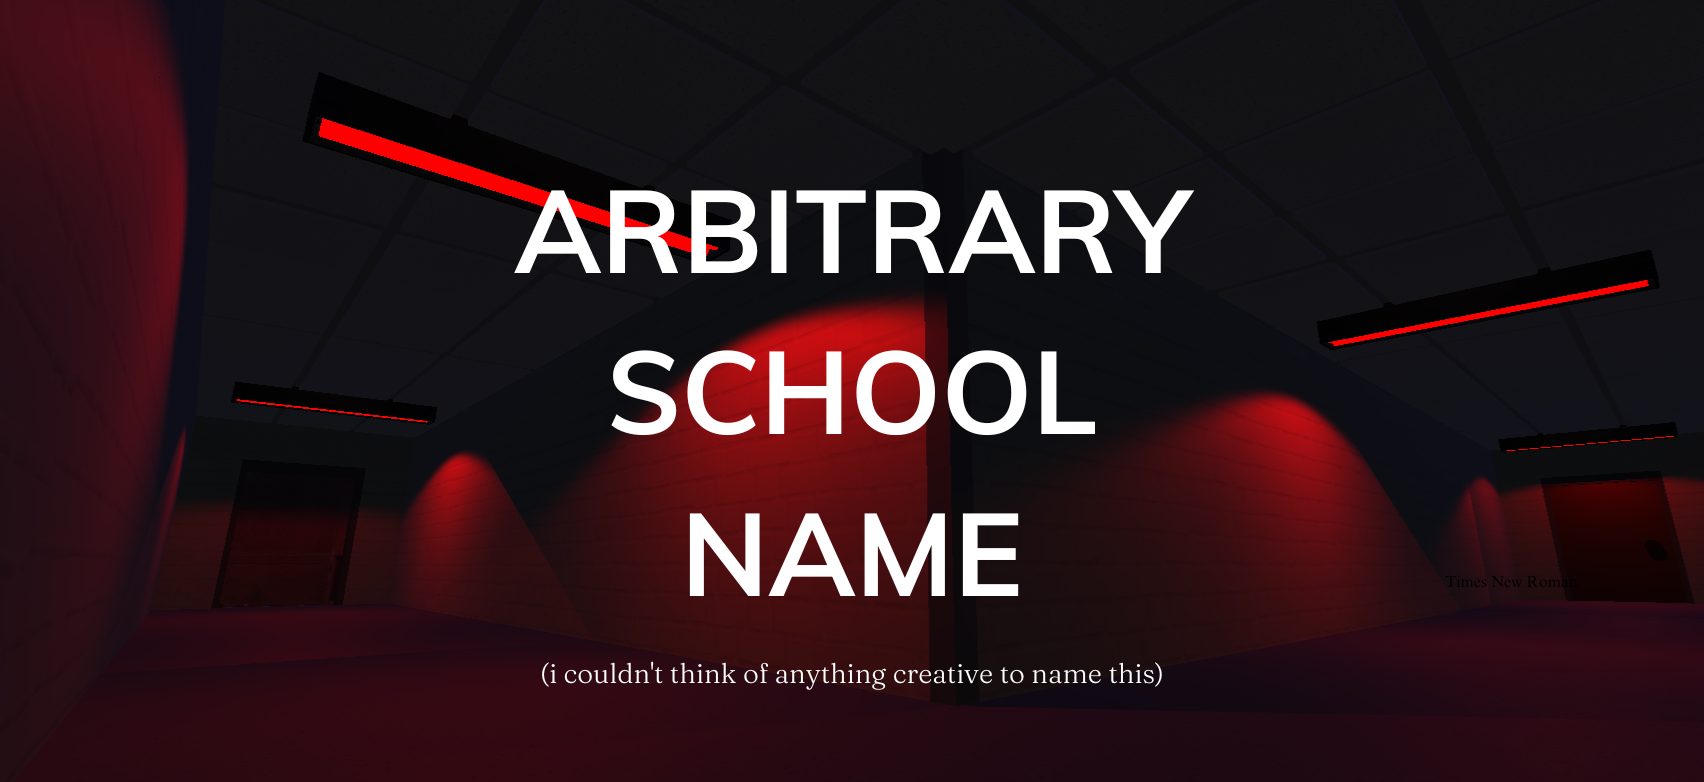 Arbitrary School Name